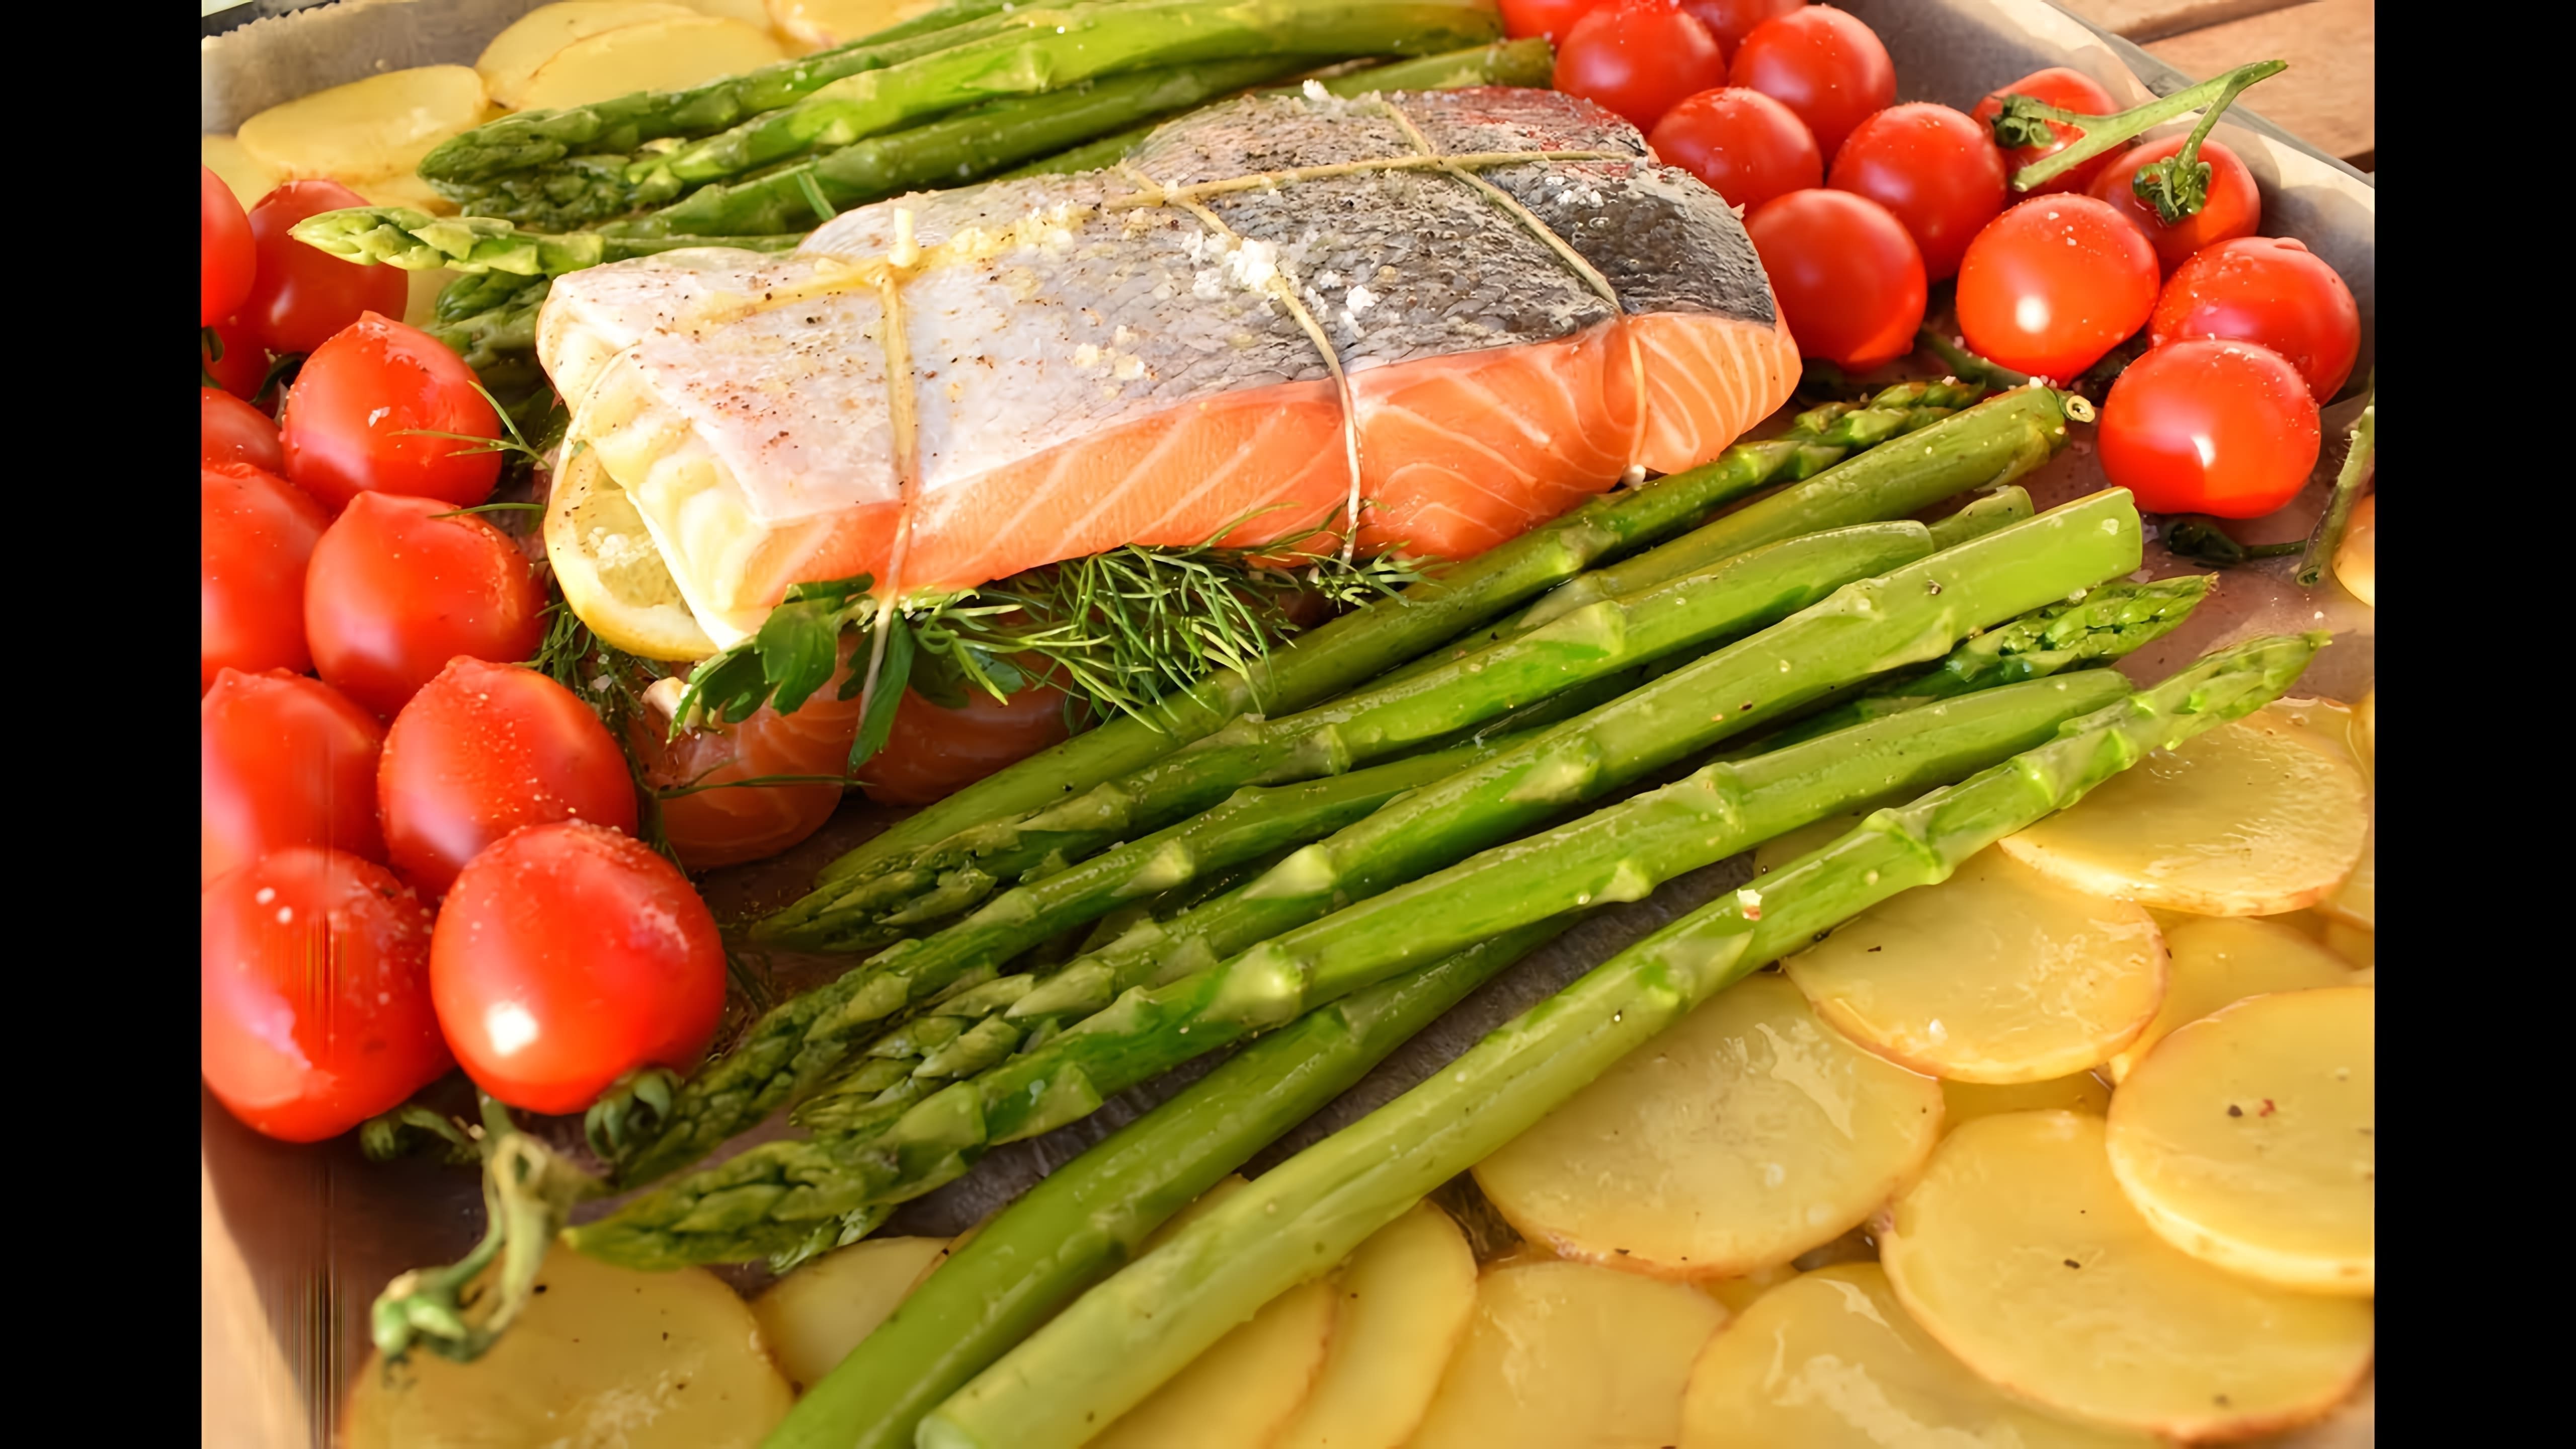 В этом видео демонстрируется процесс приготовления рыбы семги в духовке с овощами